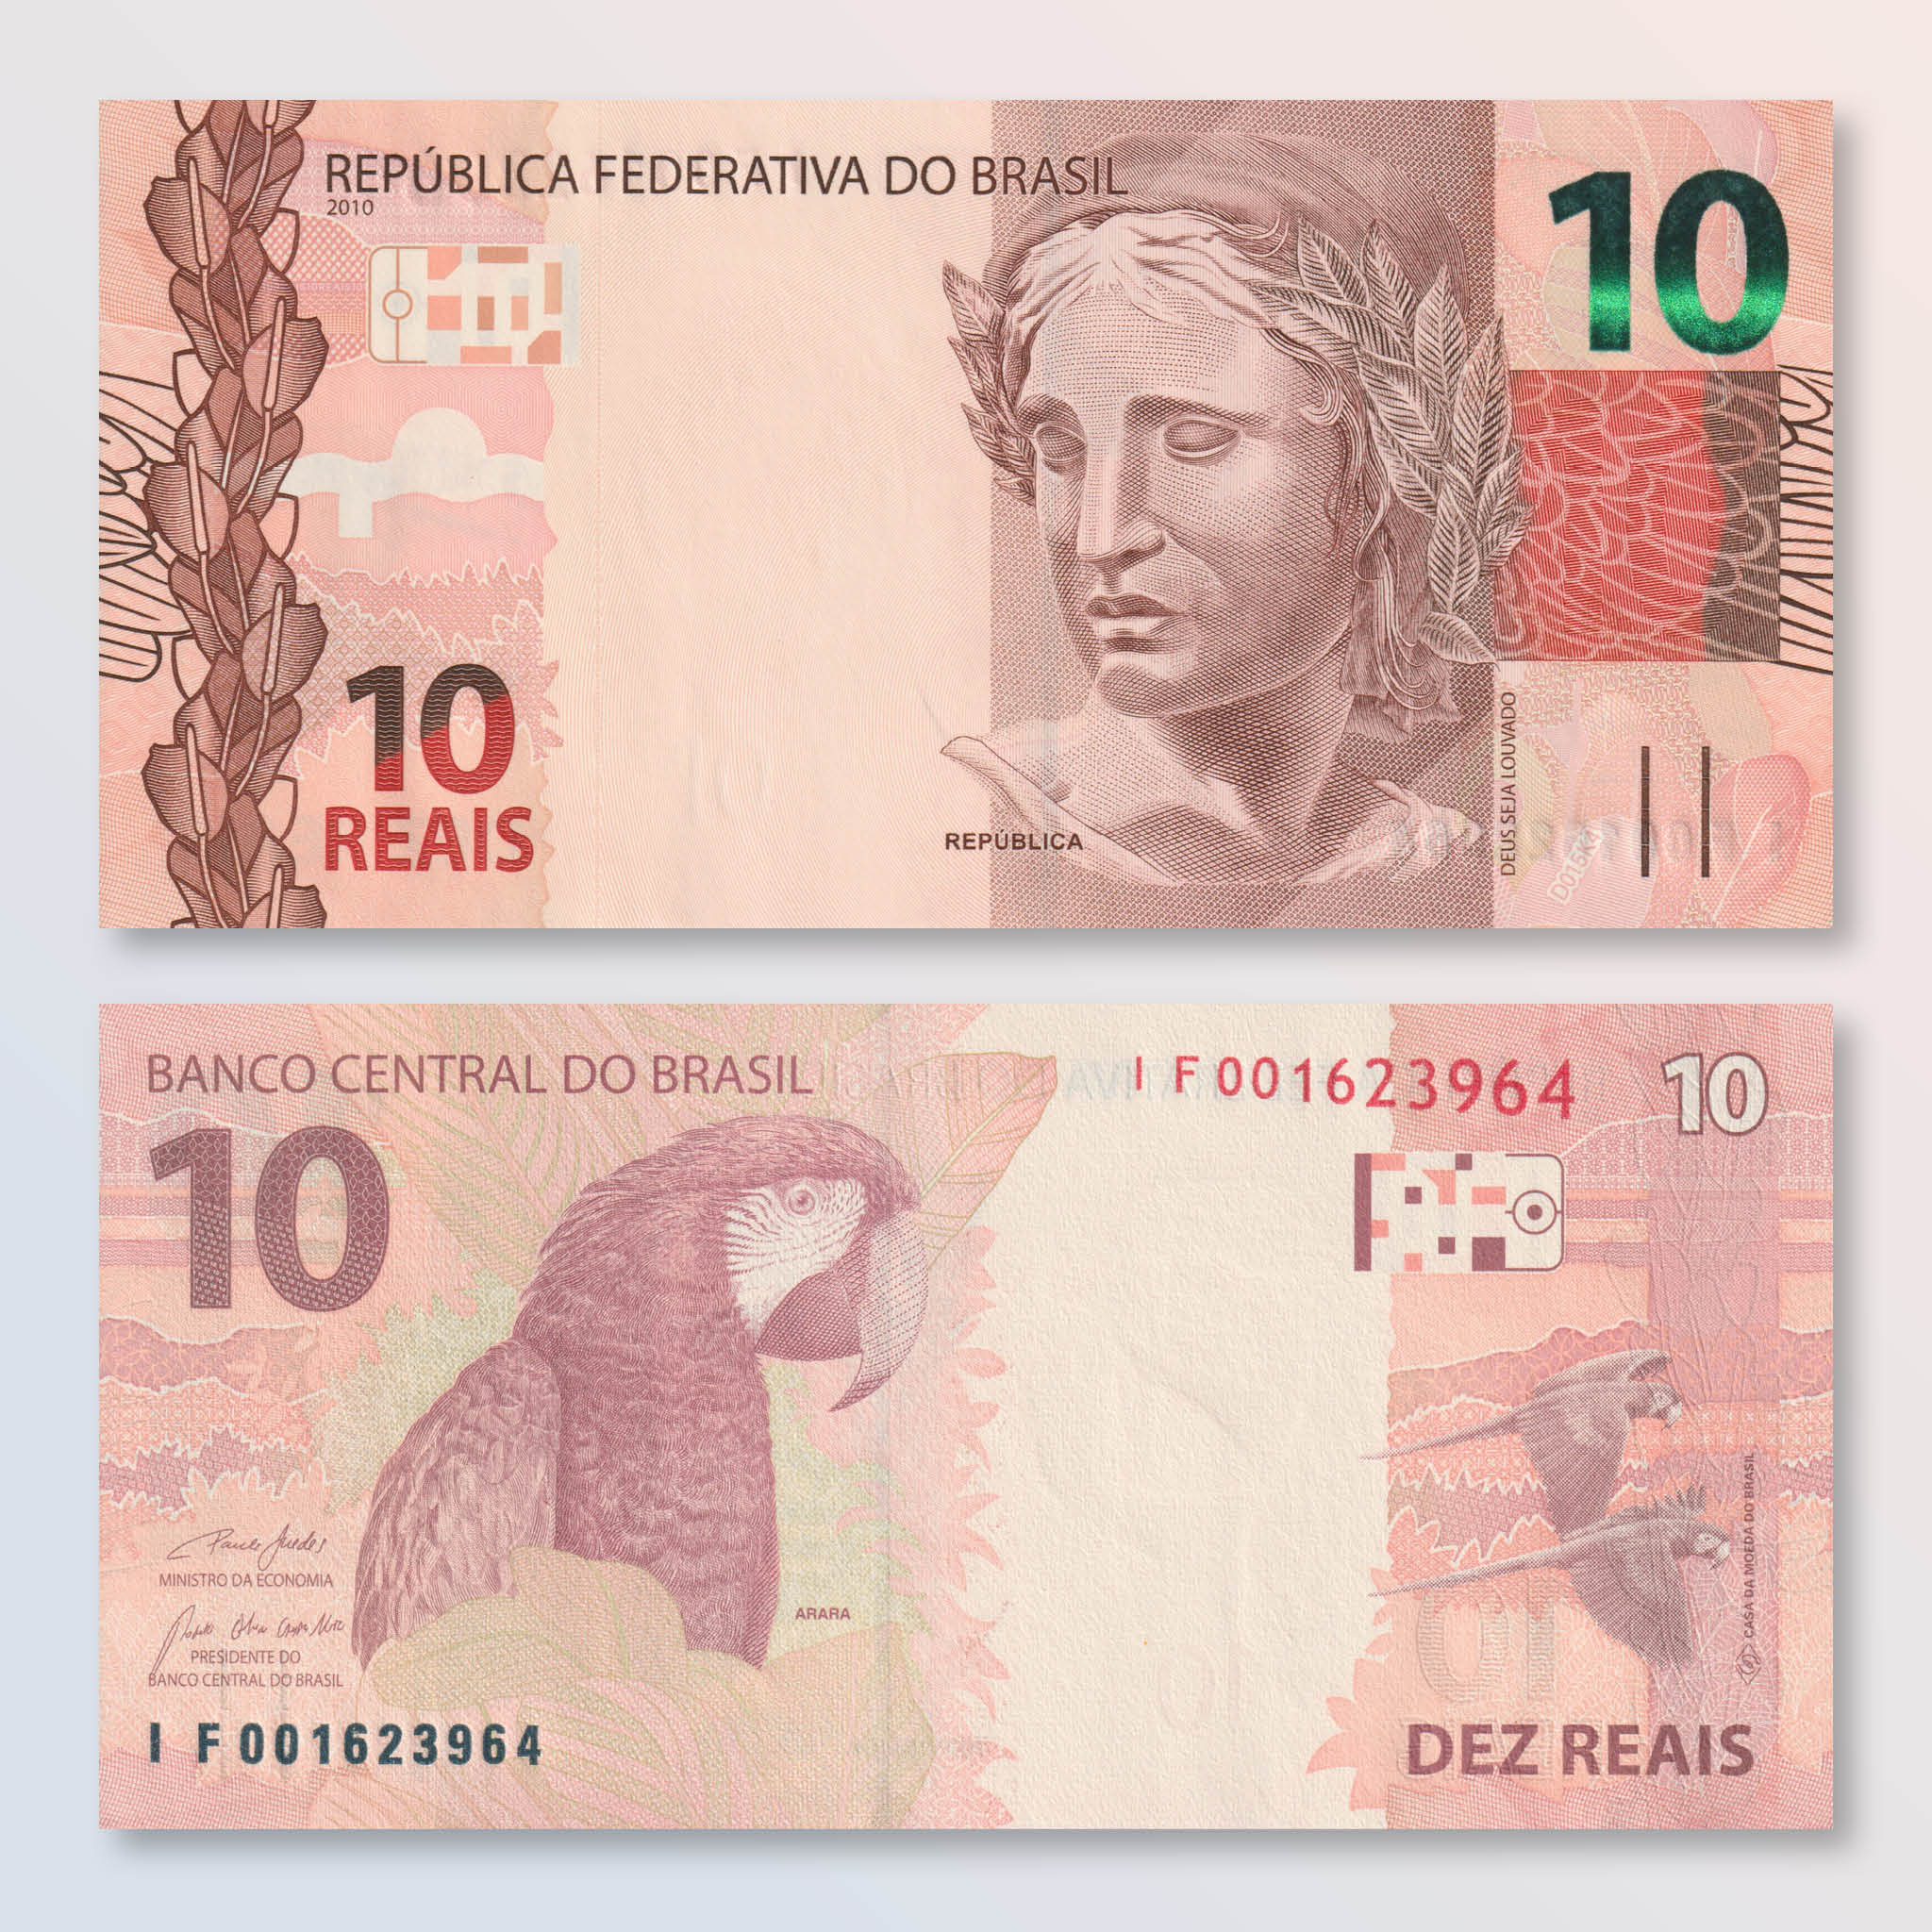 Brazil 10 Reais, 2010 (2019), B876e, P254, UNC - Robert's World Money - World Banknotes